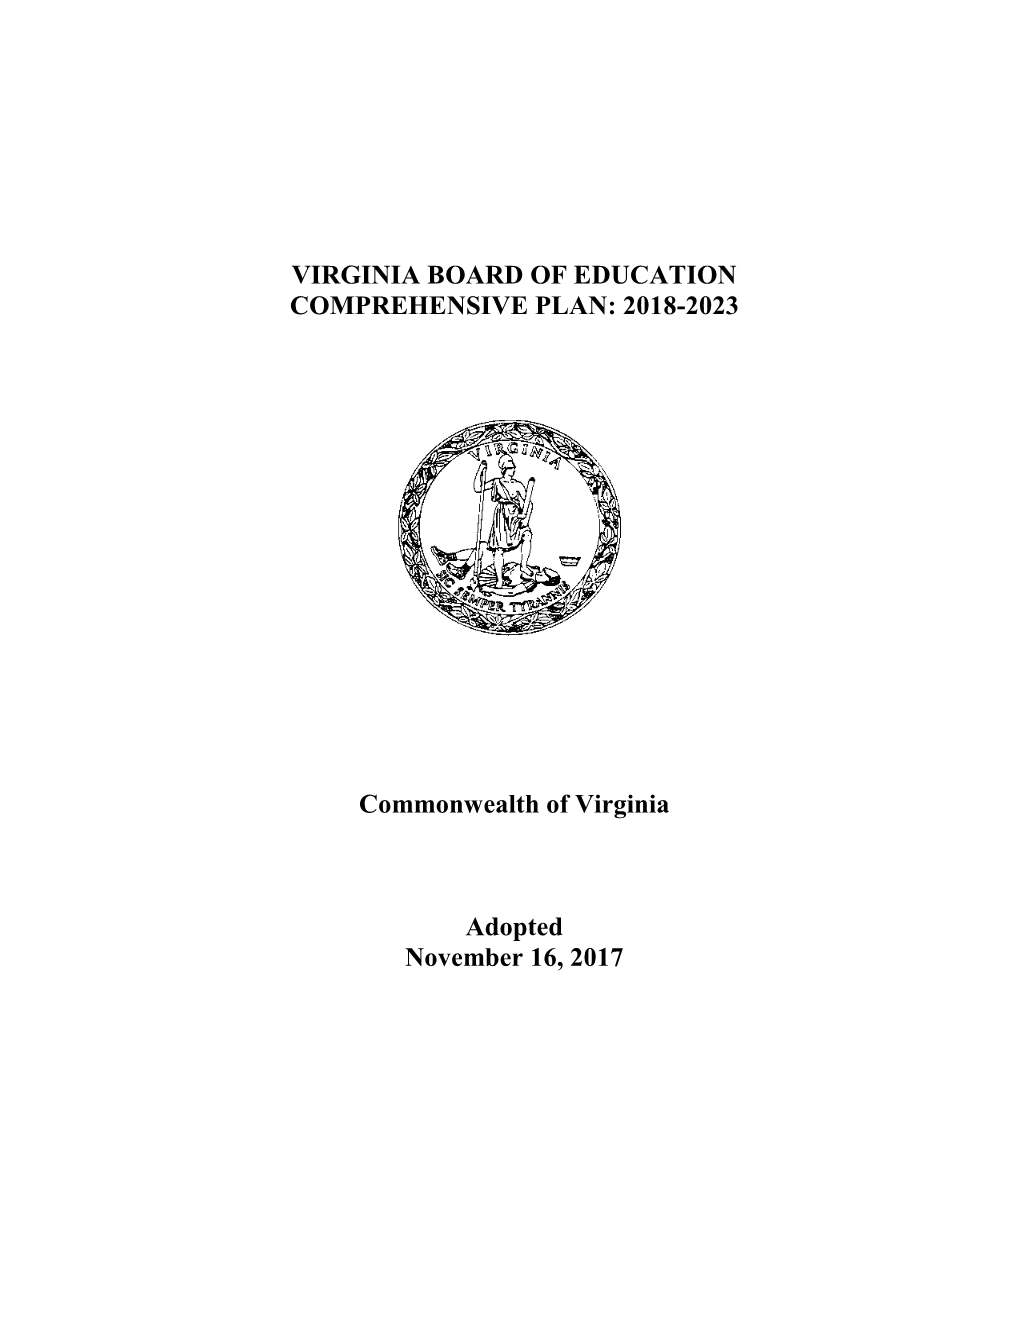 Virginia Board of Education Comprehensive Plan: 2018-2023